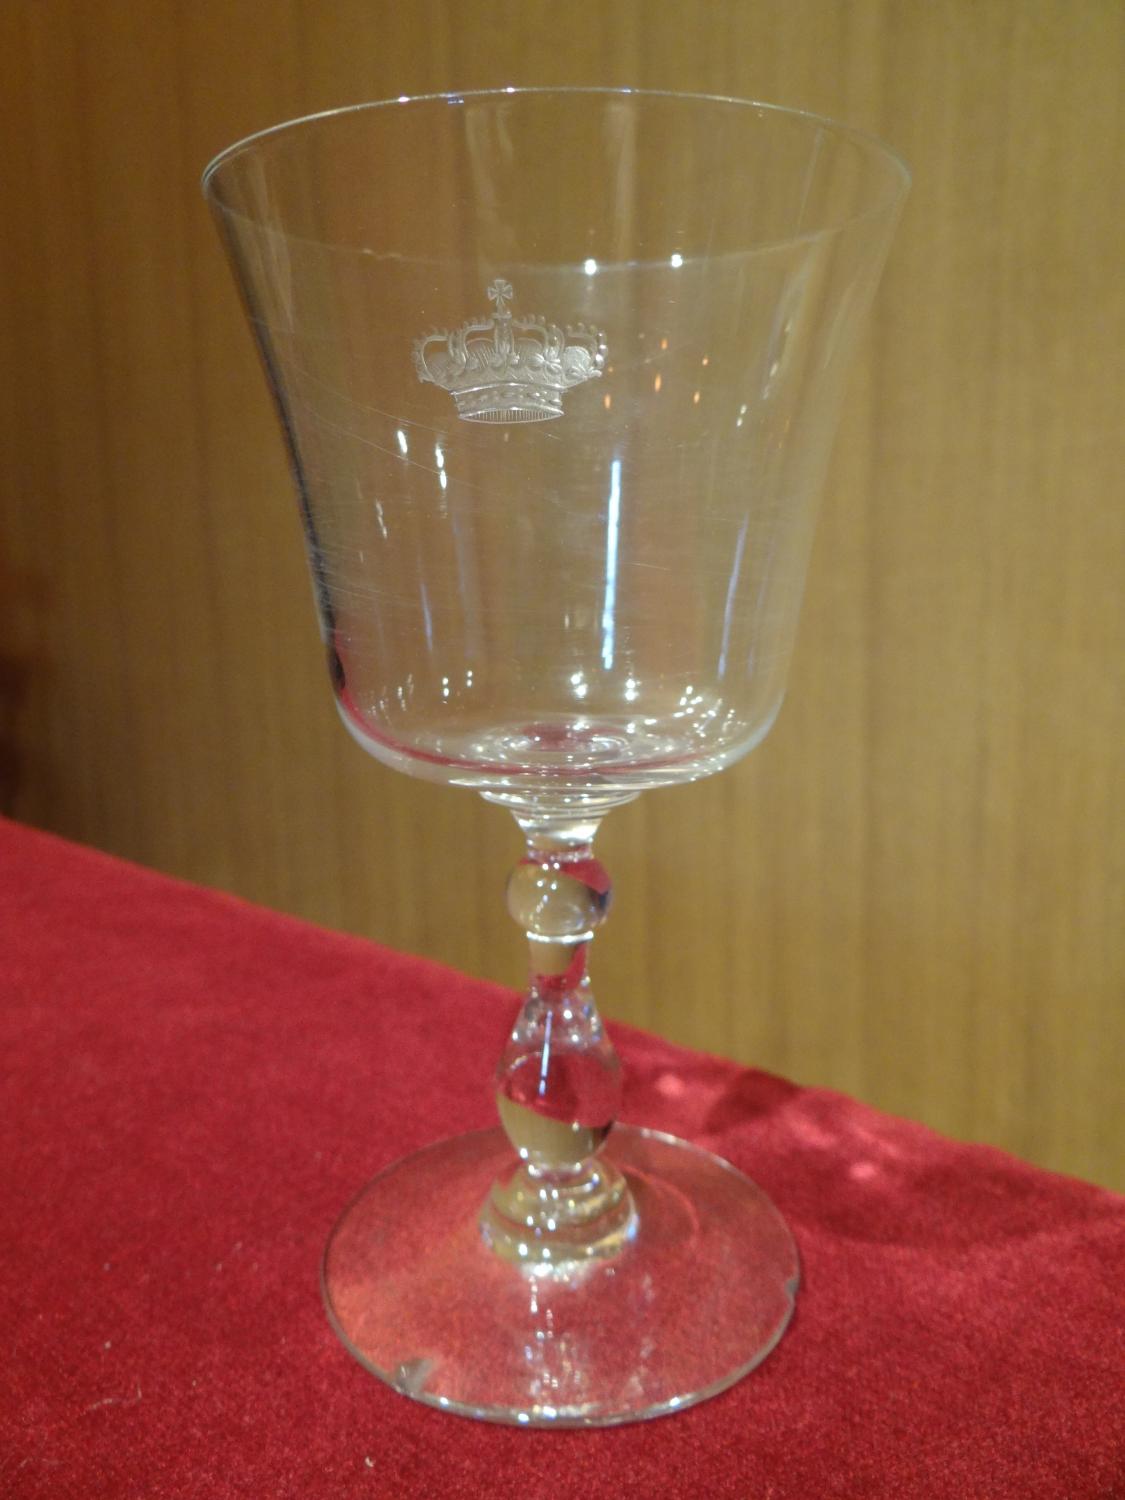 ensemble de trois verres gravés d'une couronne dite couronne impériale russe